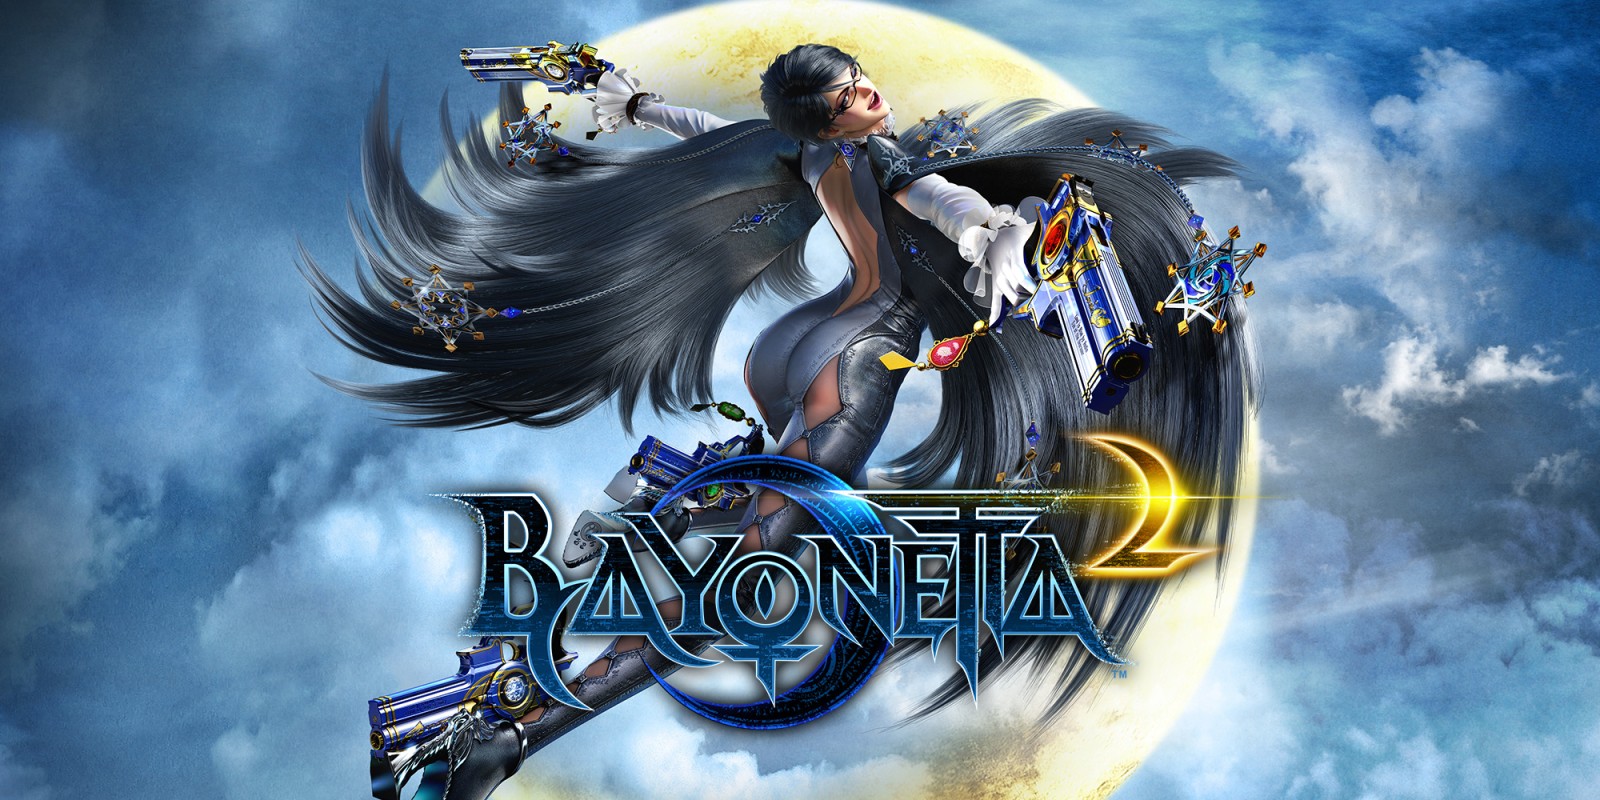 Bayonetta 3  Digital Foundry